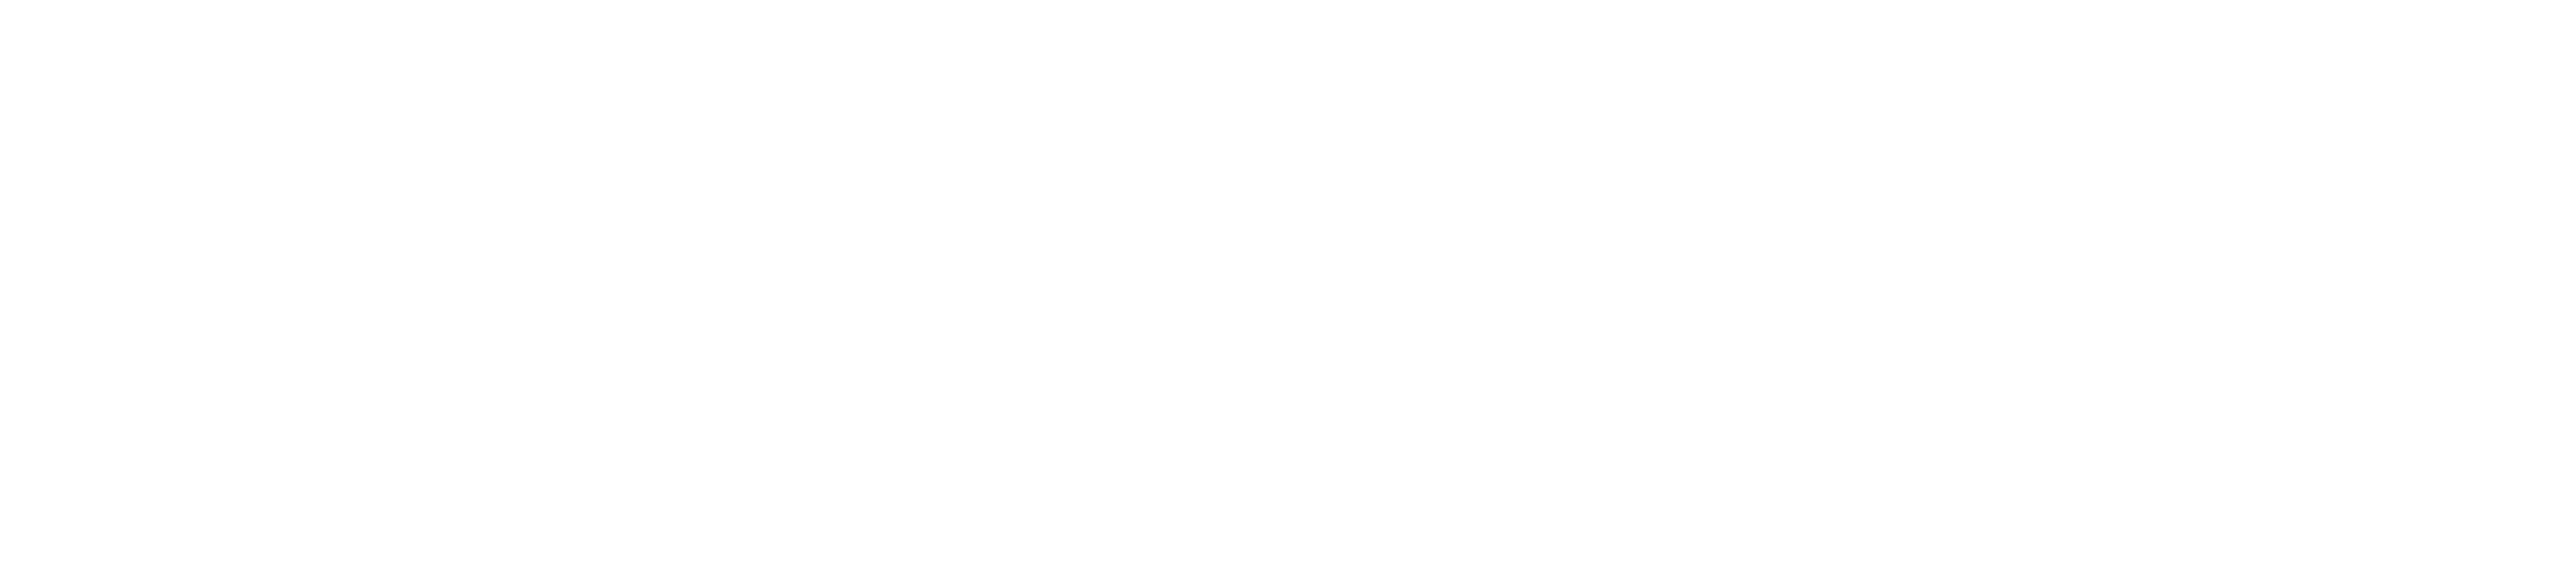 Alabama Contemporary Art Center